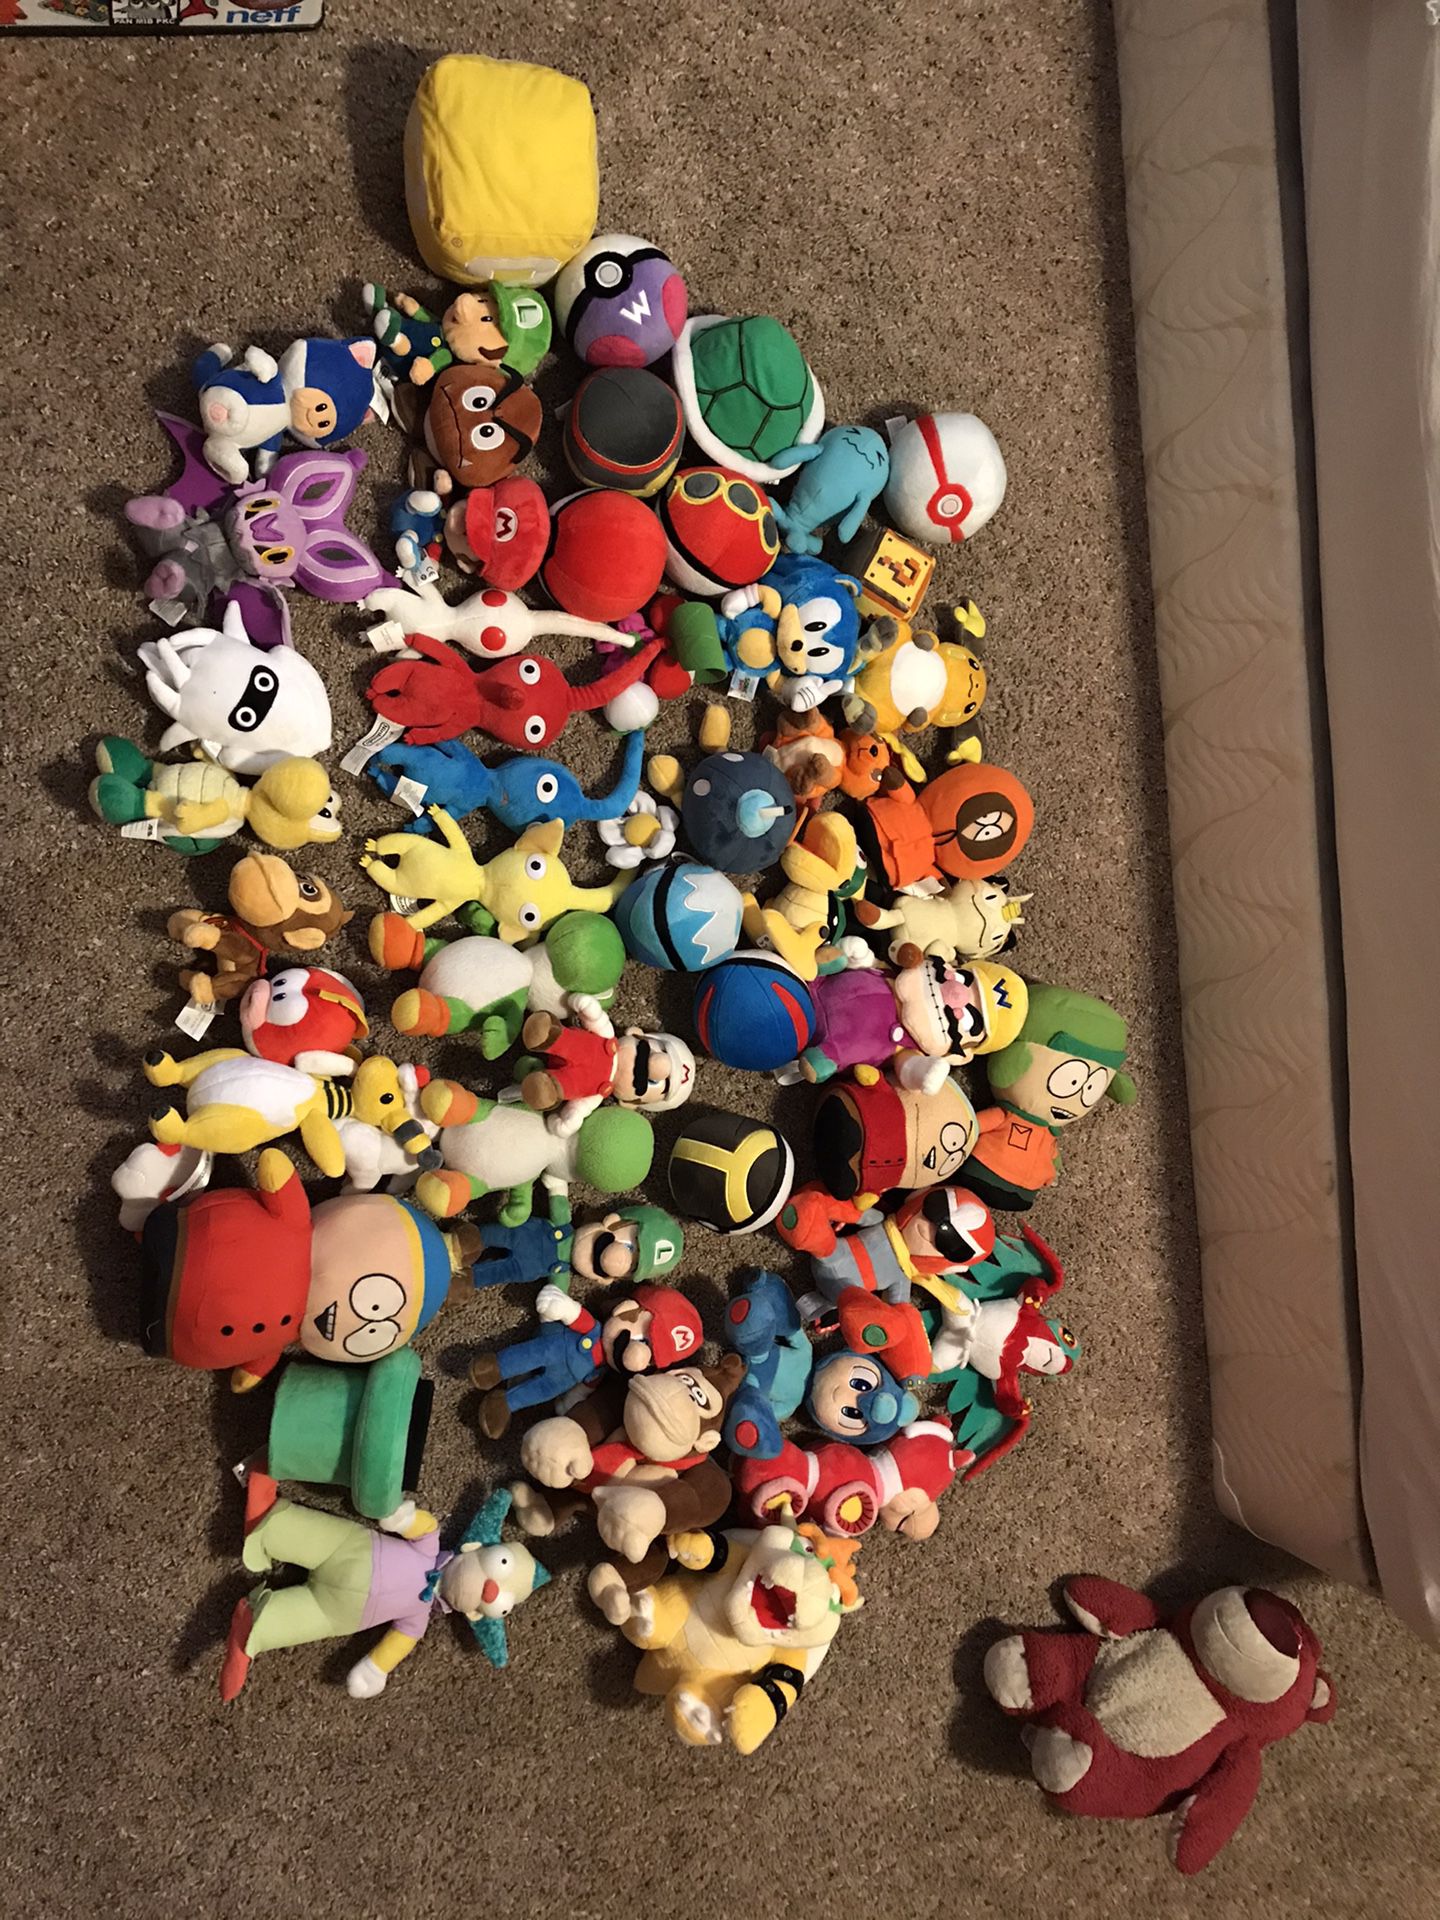 Nintendo Pokémon cartoon plushies toys